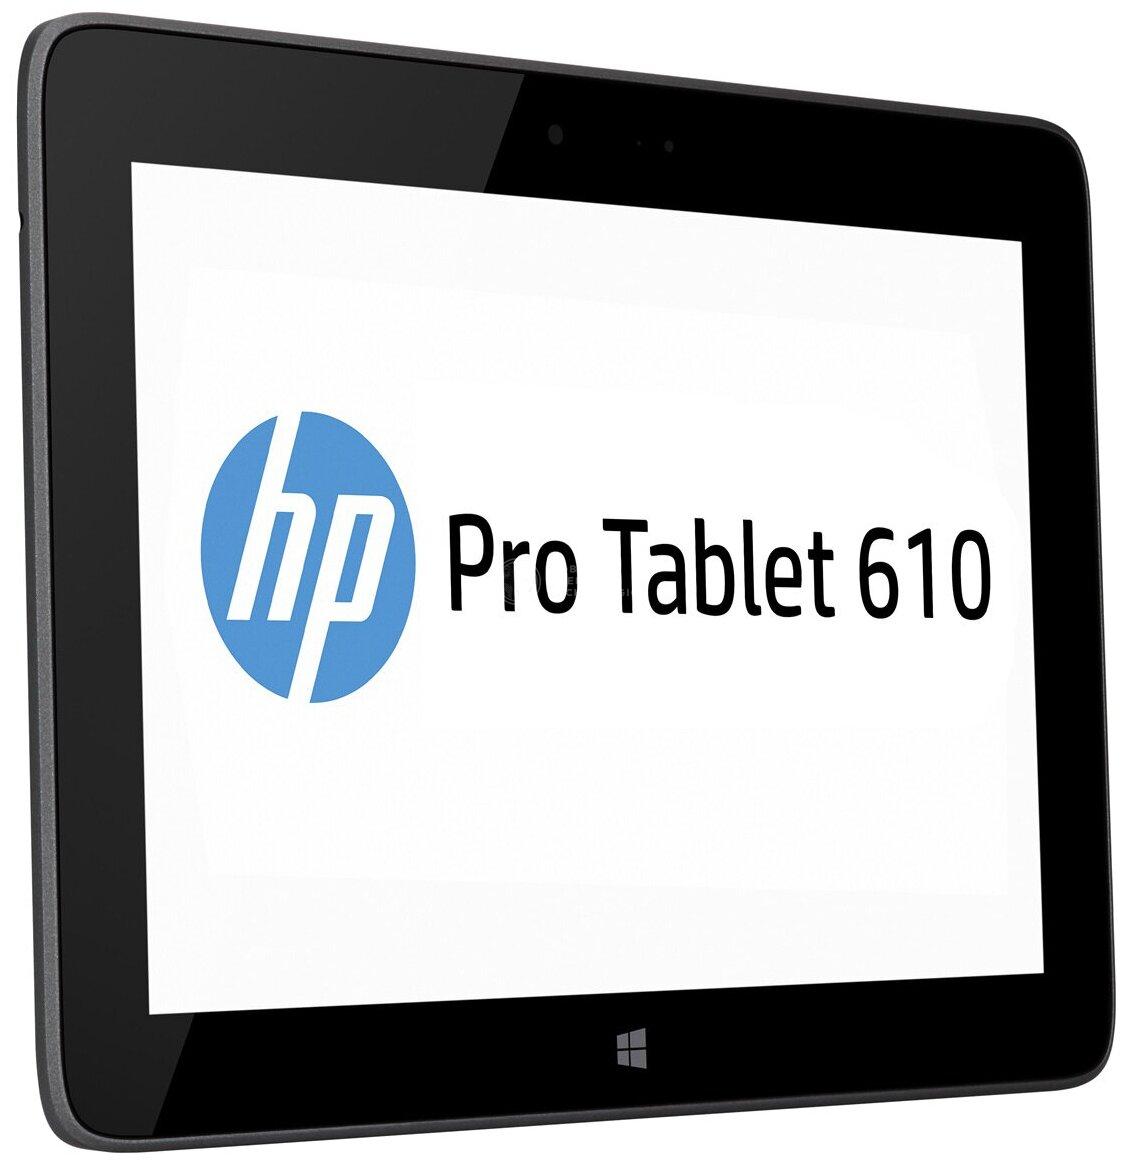 HP Pro Tablet 610 (G4T86UT)